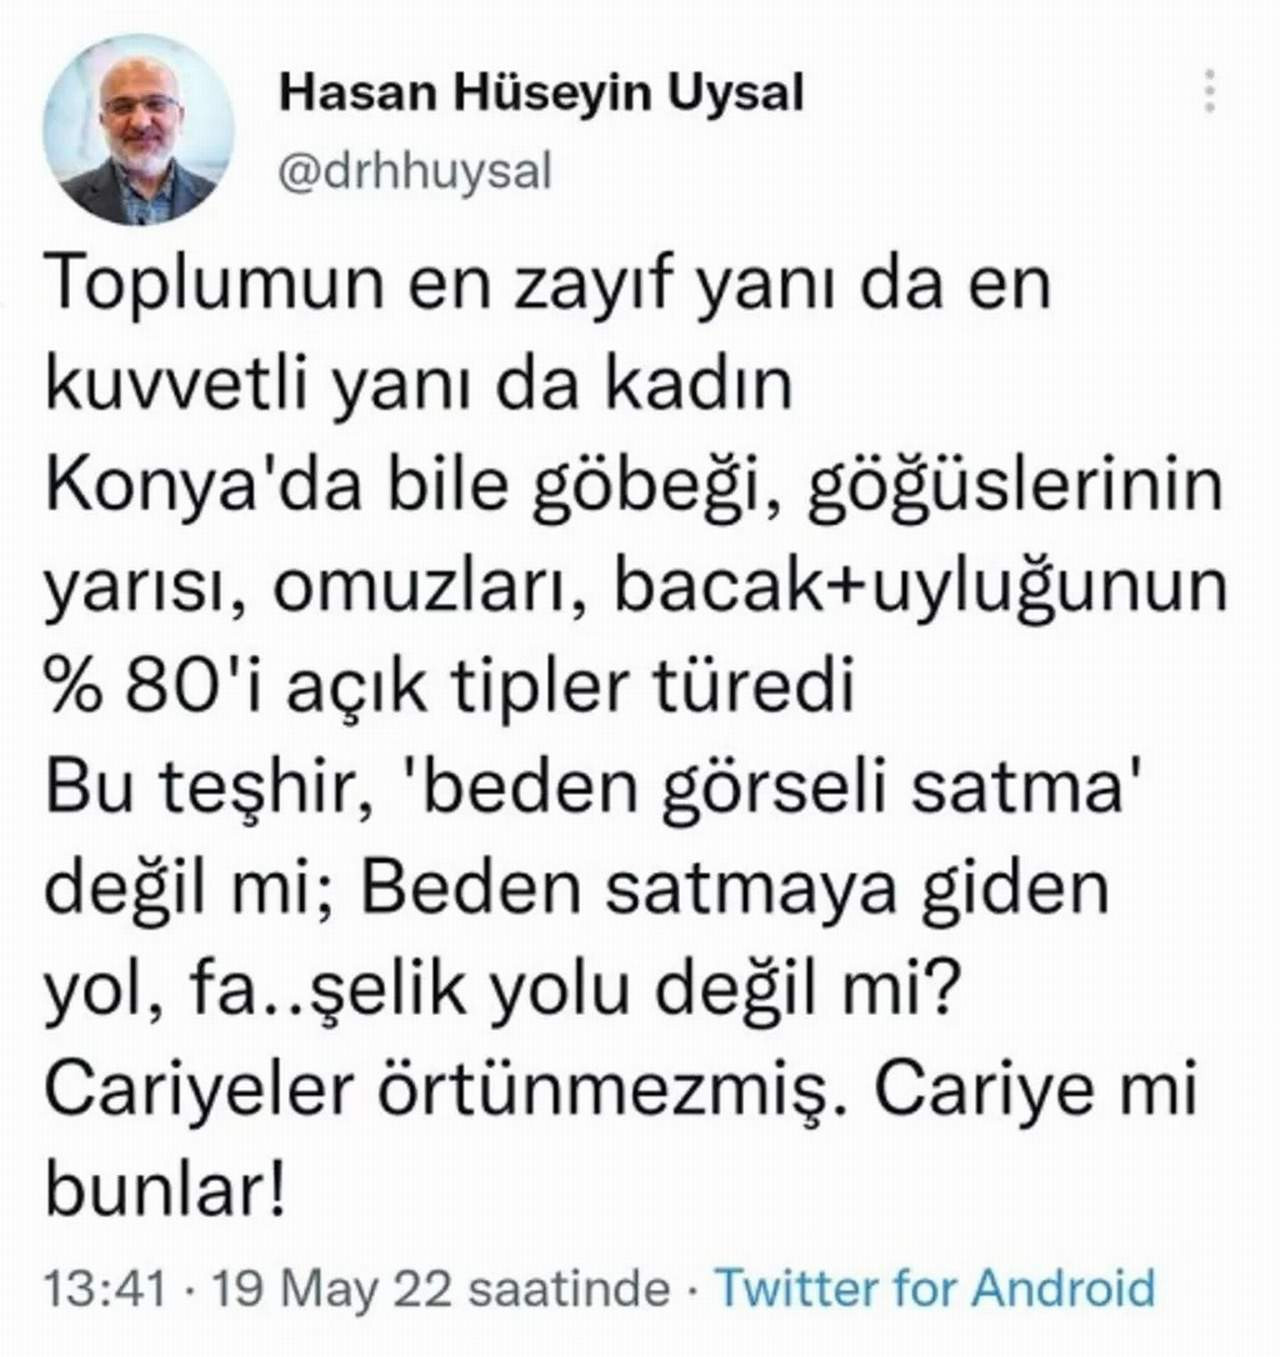 Hasan Hüseyin Uysal'ın sosyal medya paylaşımı